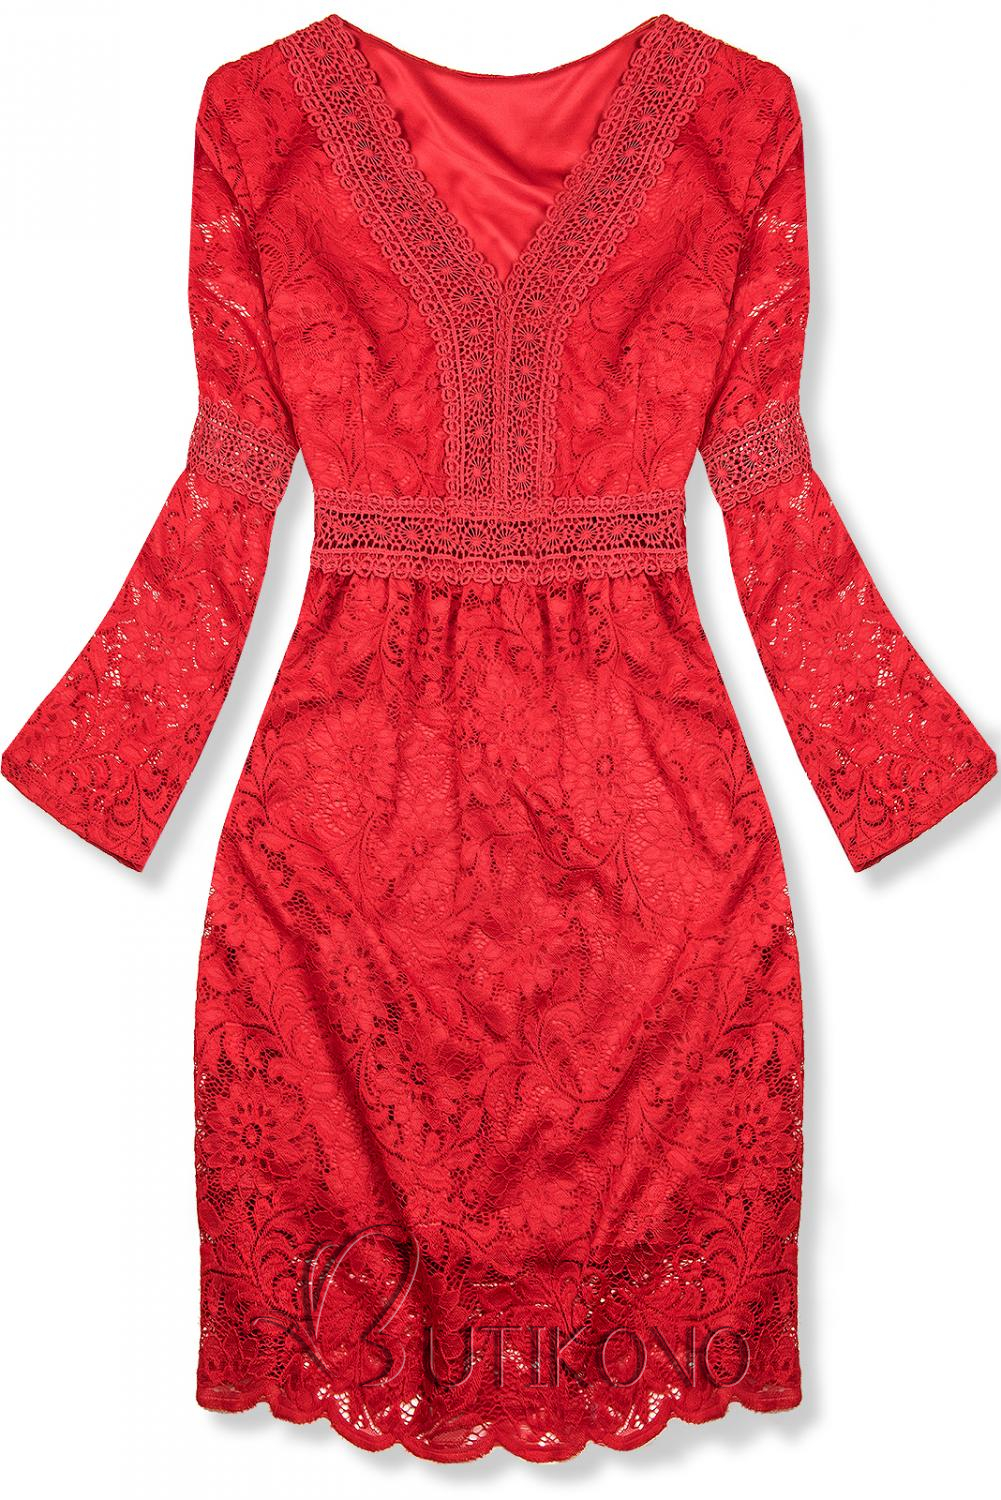 Červené elegantní krajkové šaty